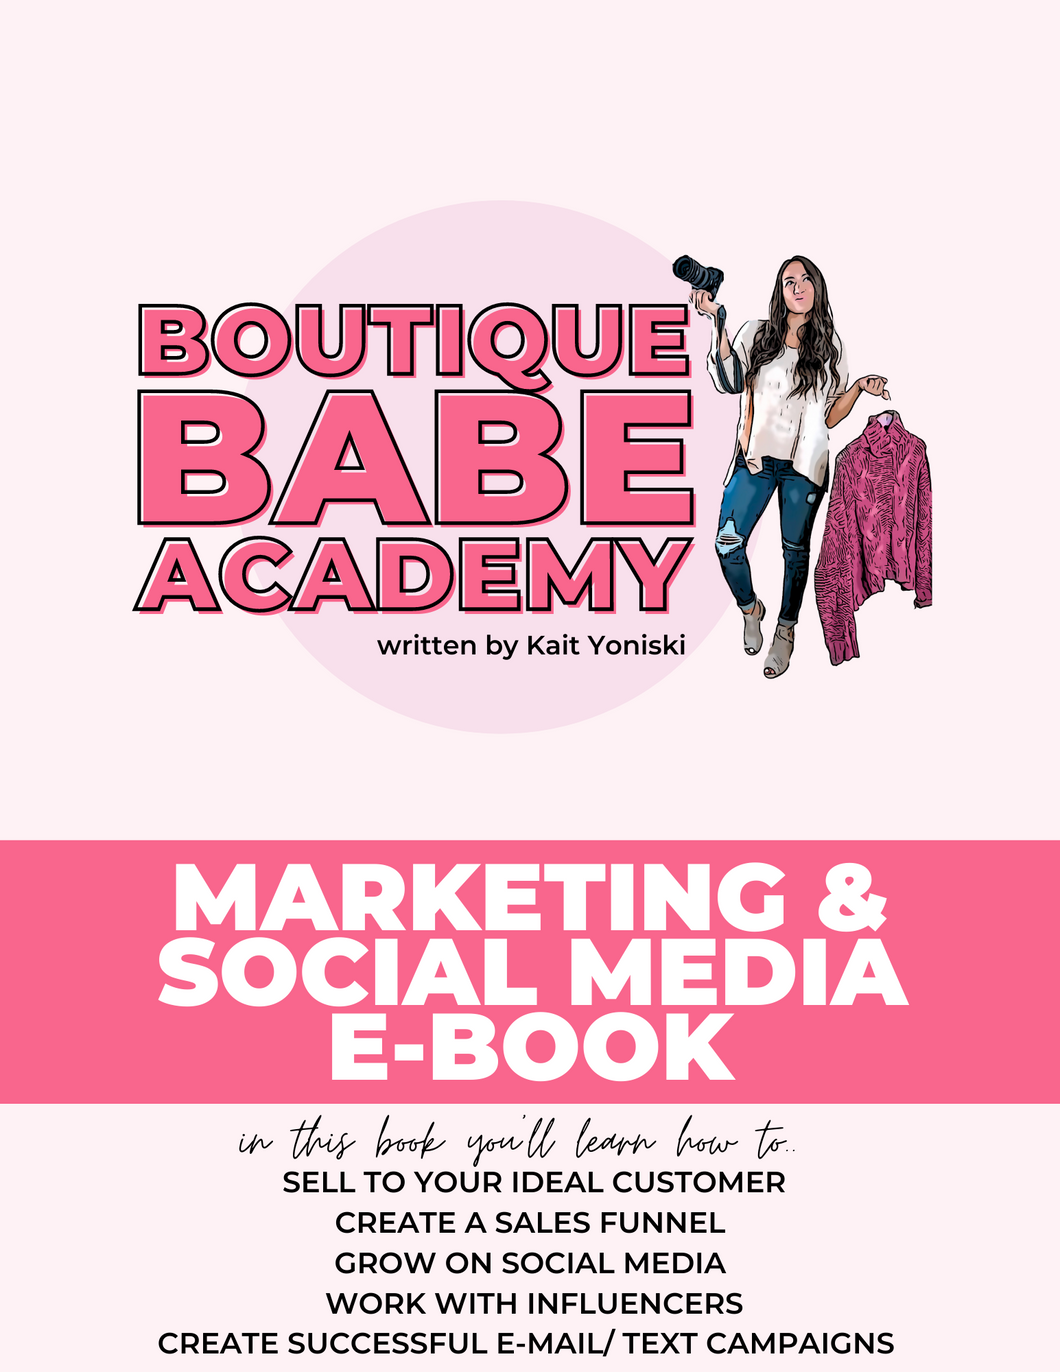 MARKETING & SOCIAL MEDIA: BOUTIQUE BABE E-BOOK